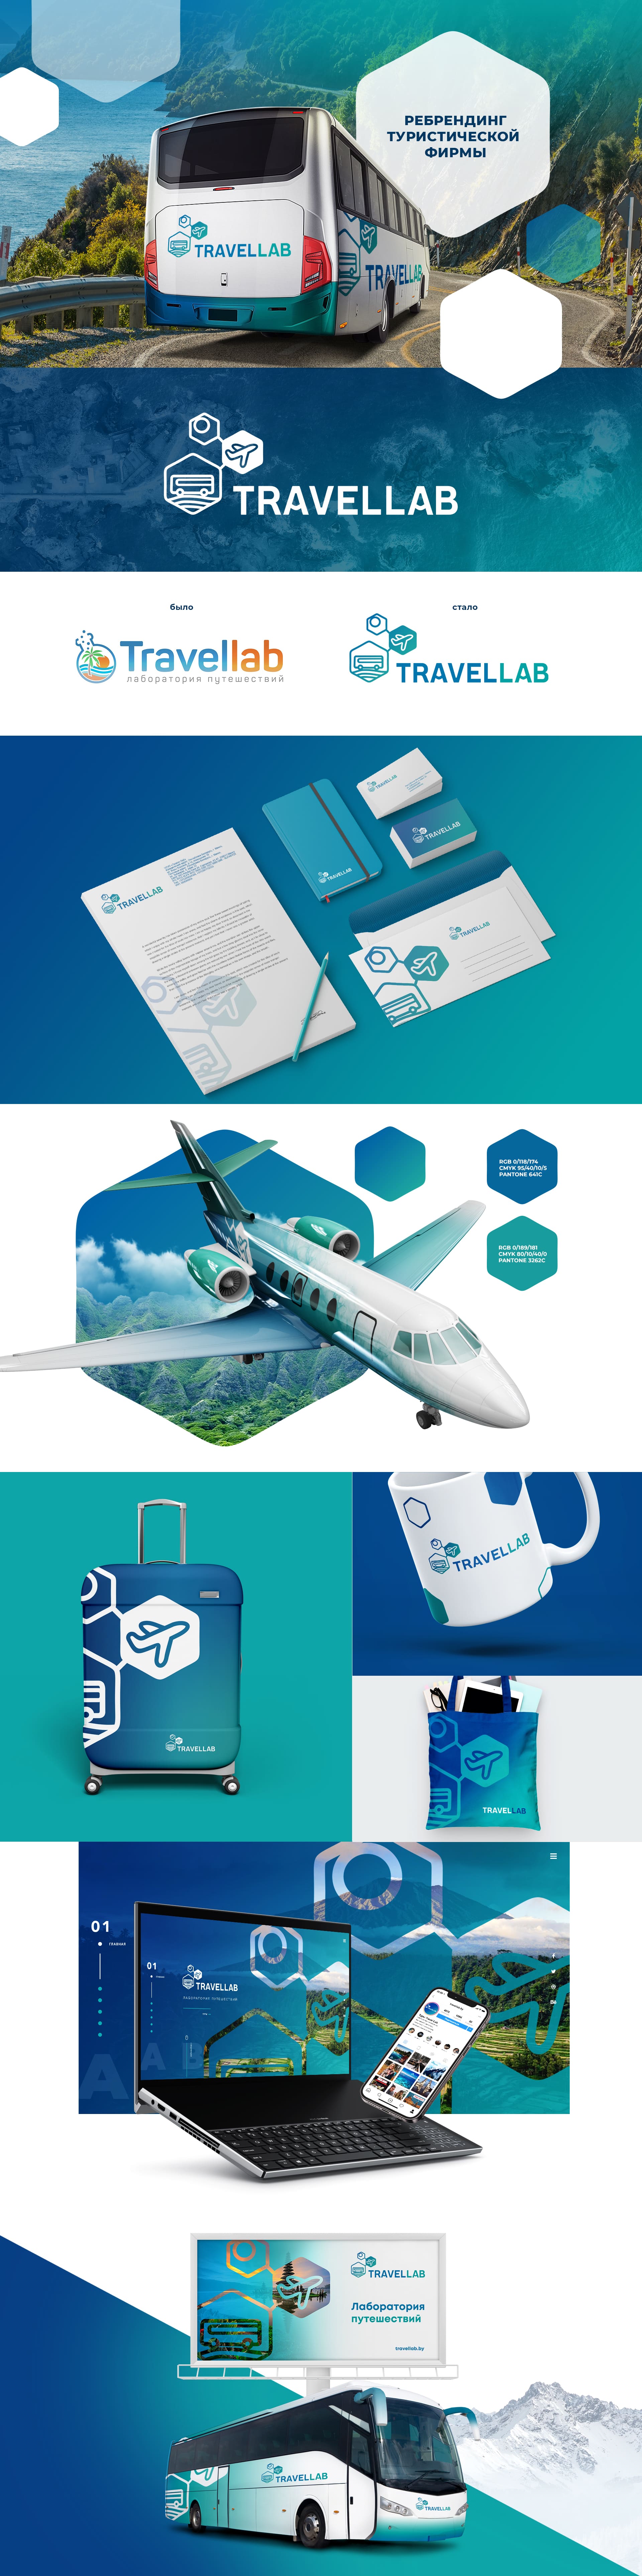 Разработка фирменного стиля и рефрешинг логотипа для туристической компании Travellab